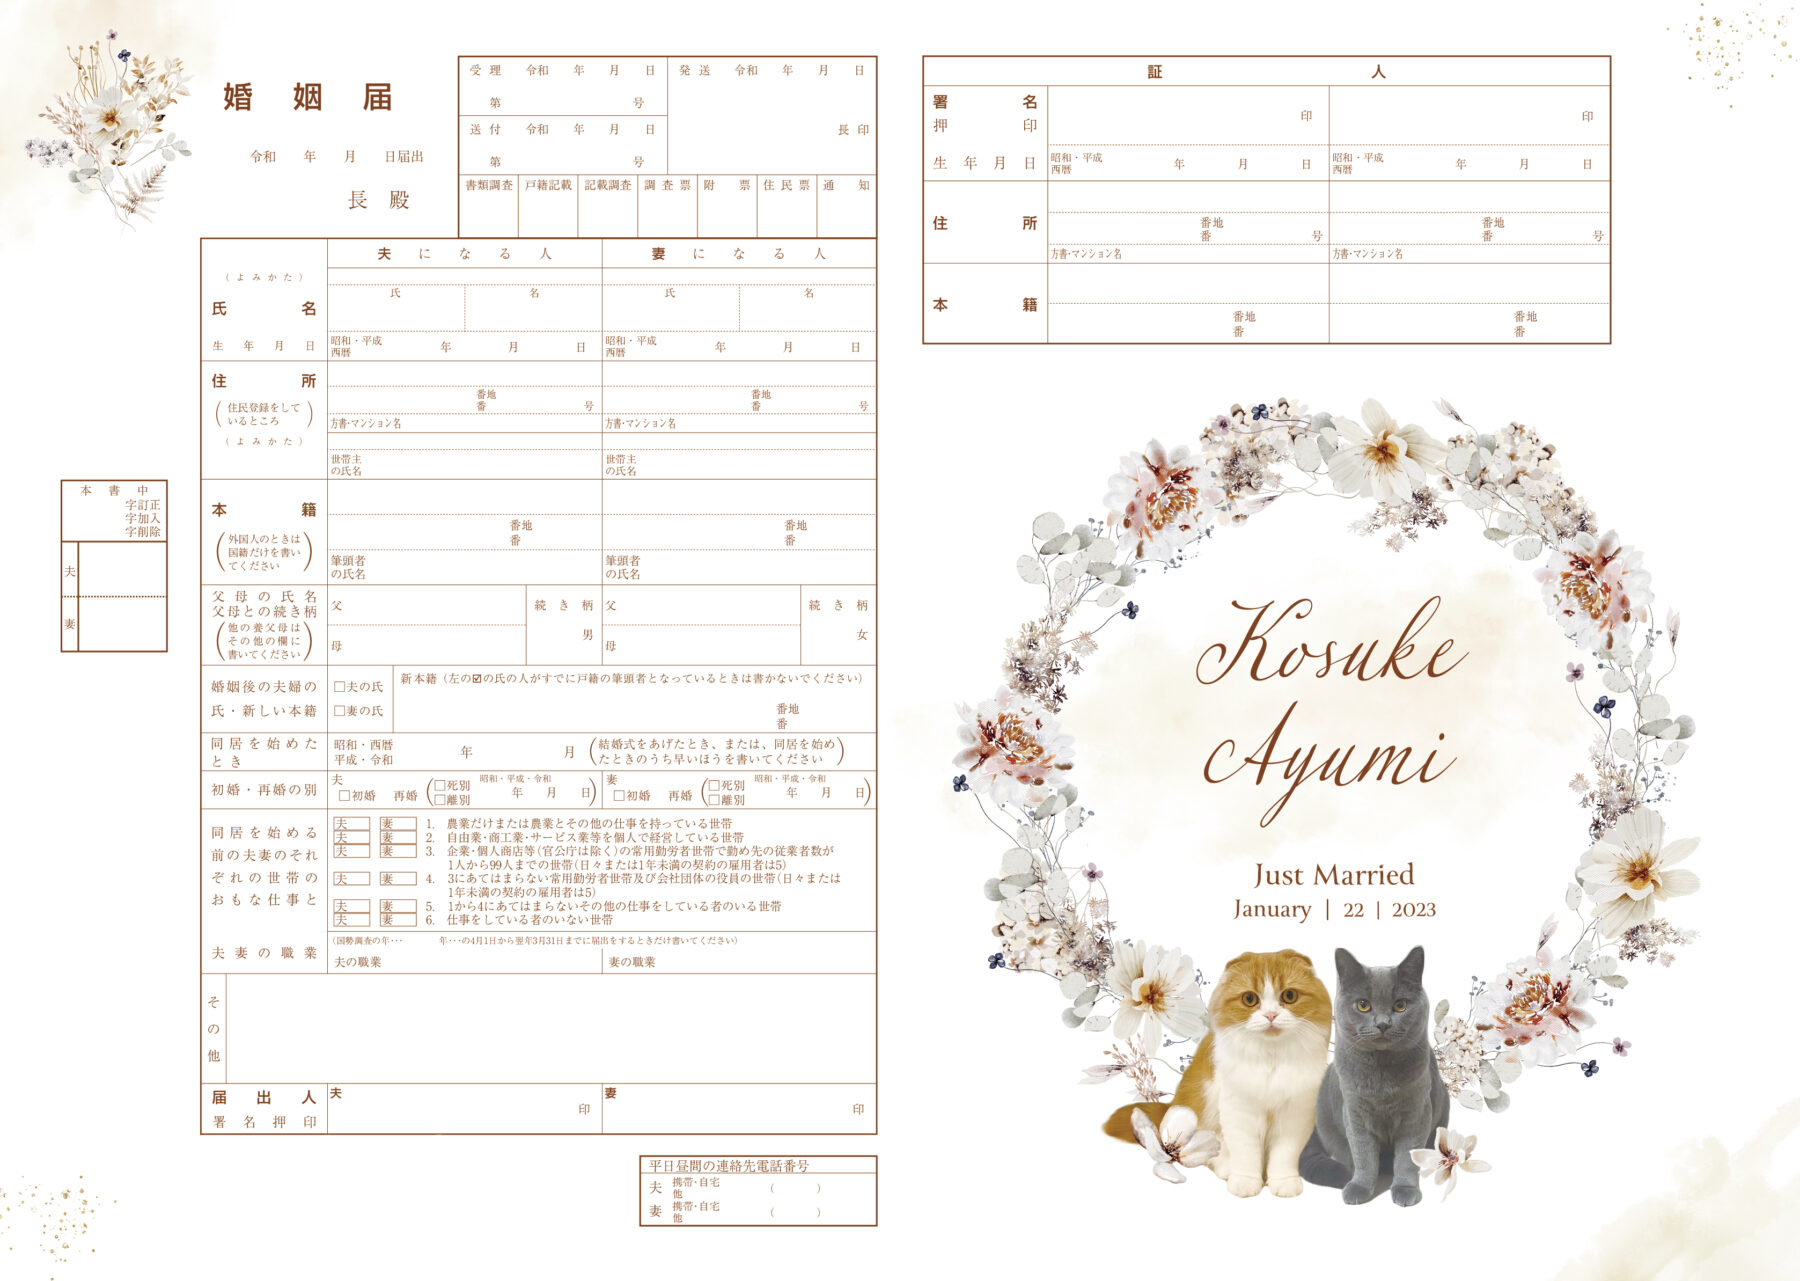 冬のお花と猫のデザインの婚姻届の画像